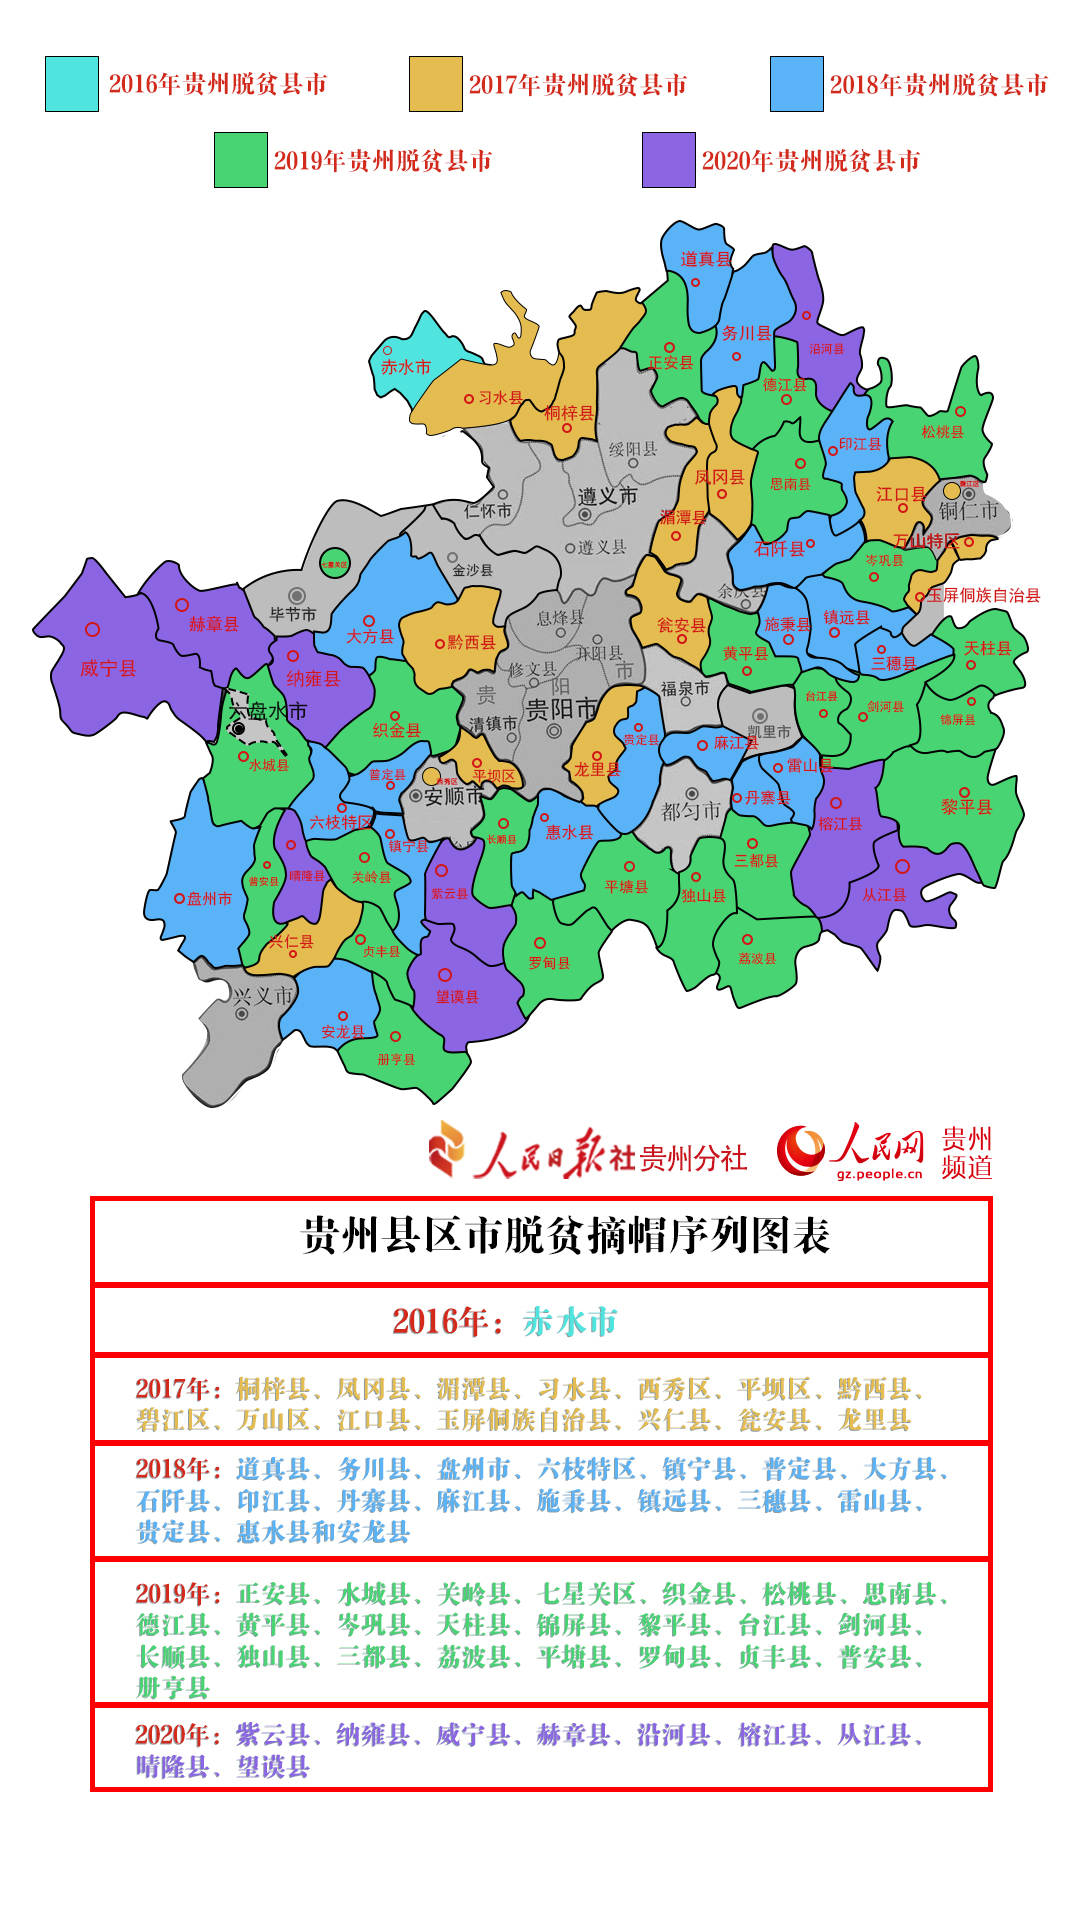 全部摘帽!贵州宣布最后9个贫困县退出贫困县序列